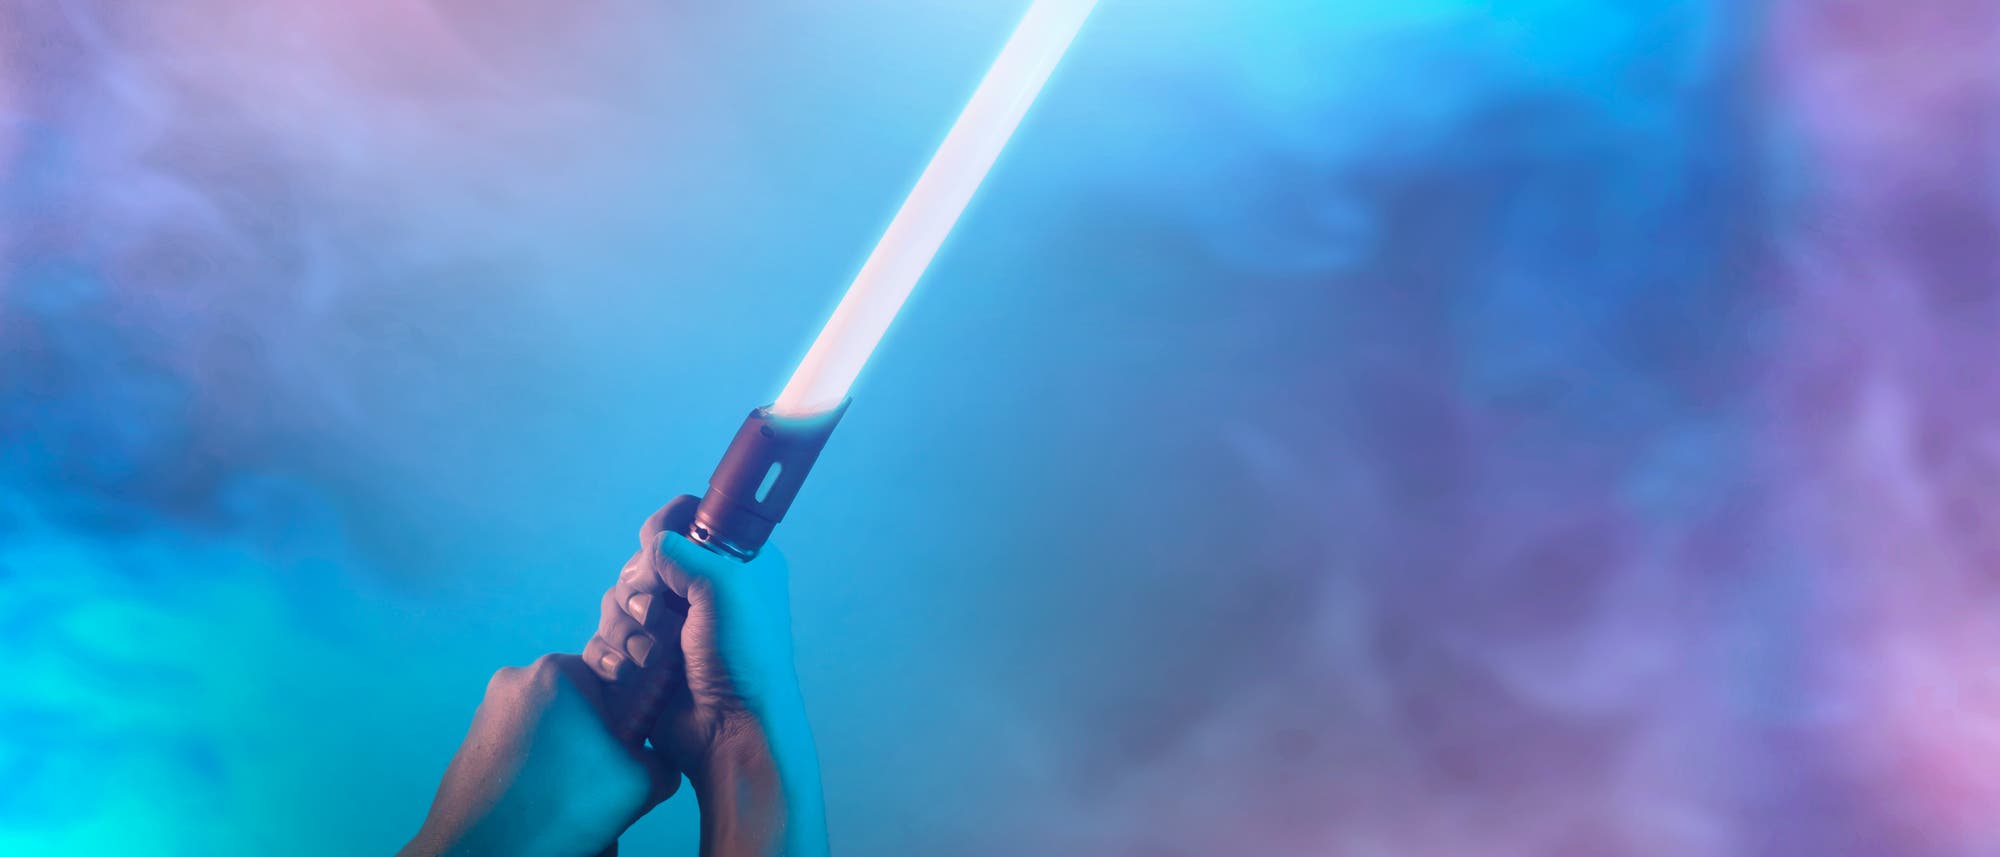 Lichtschwert vor rosa/blauem Hintergrund